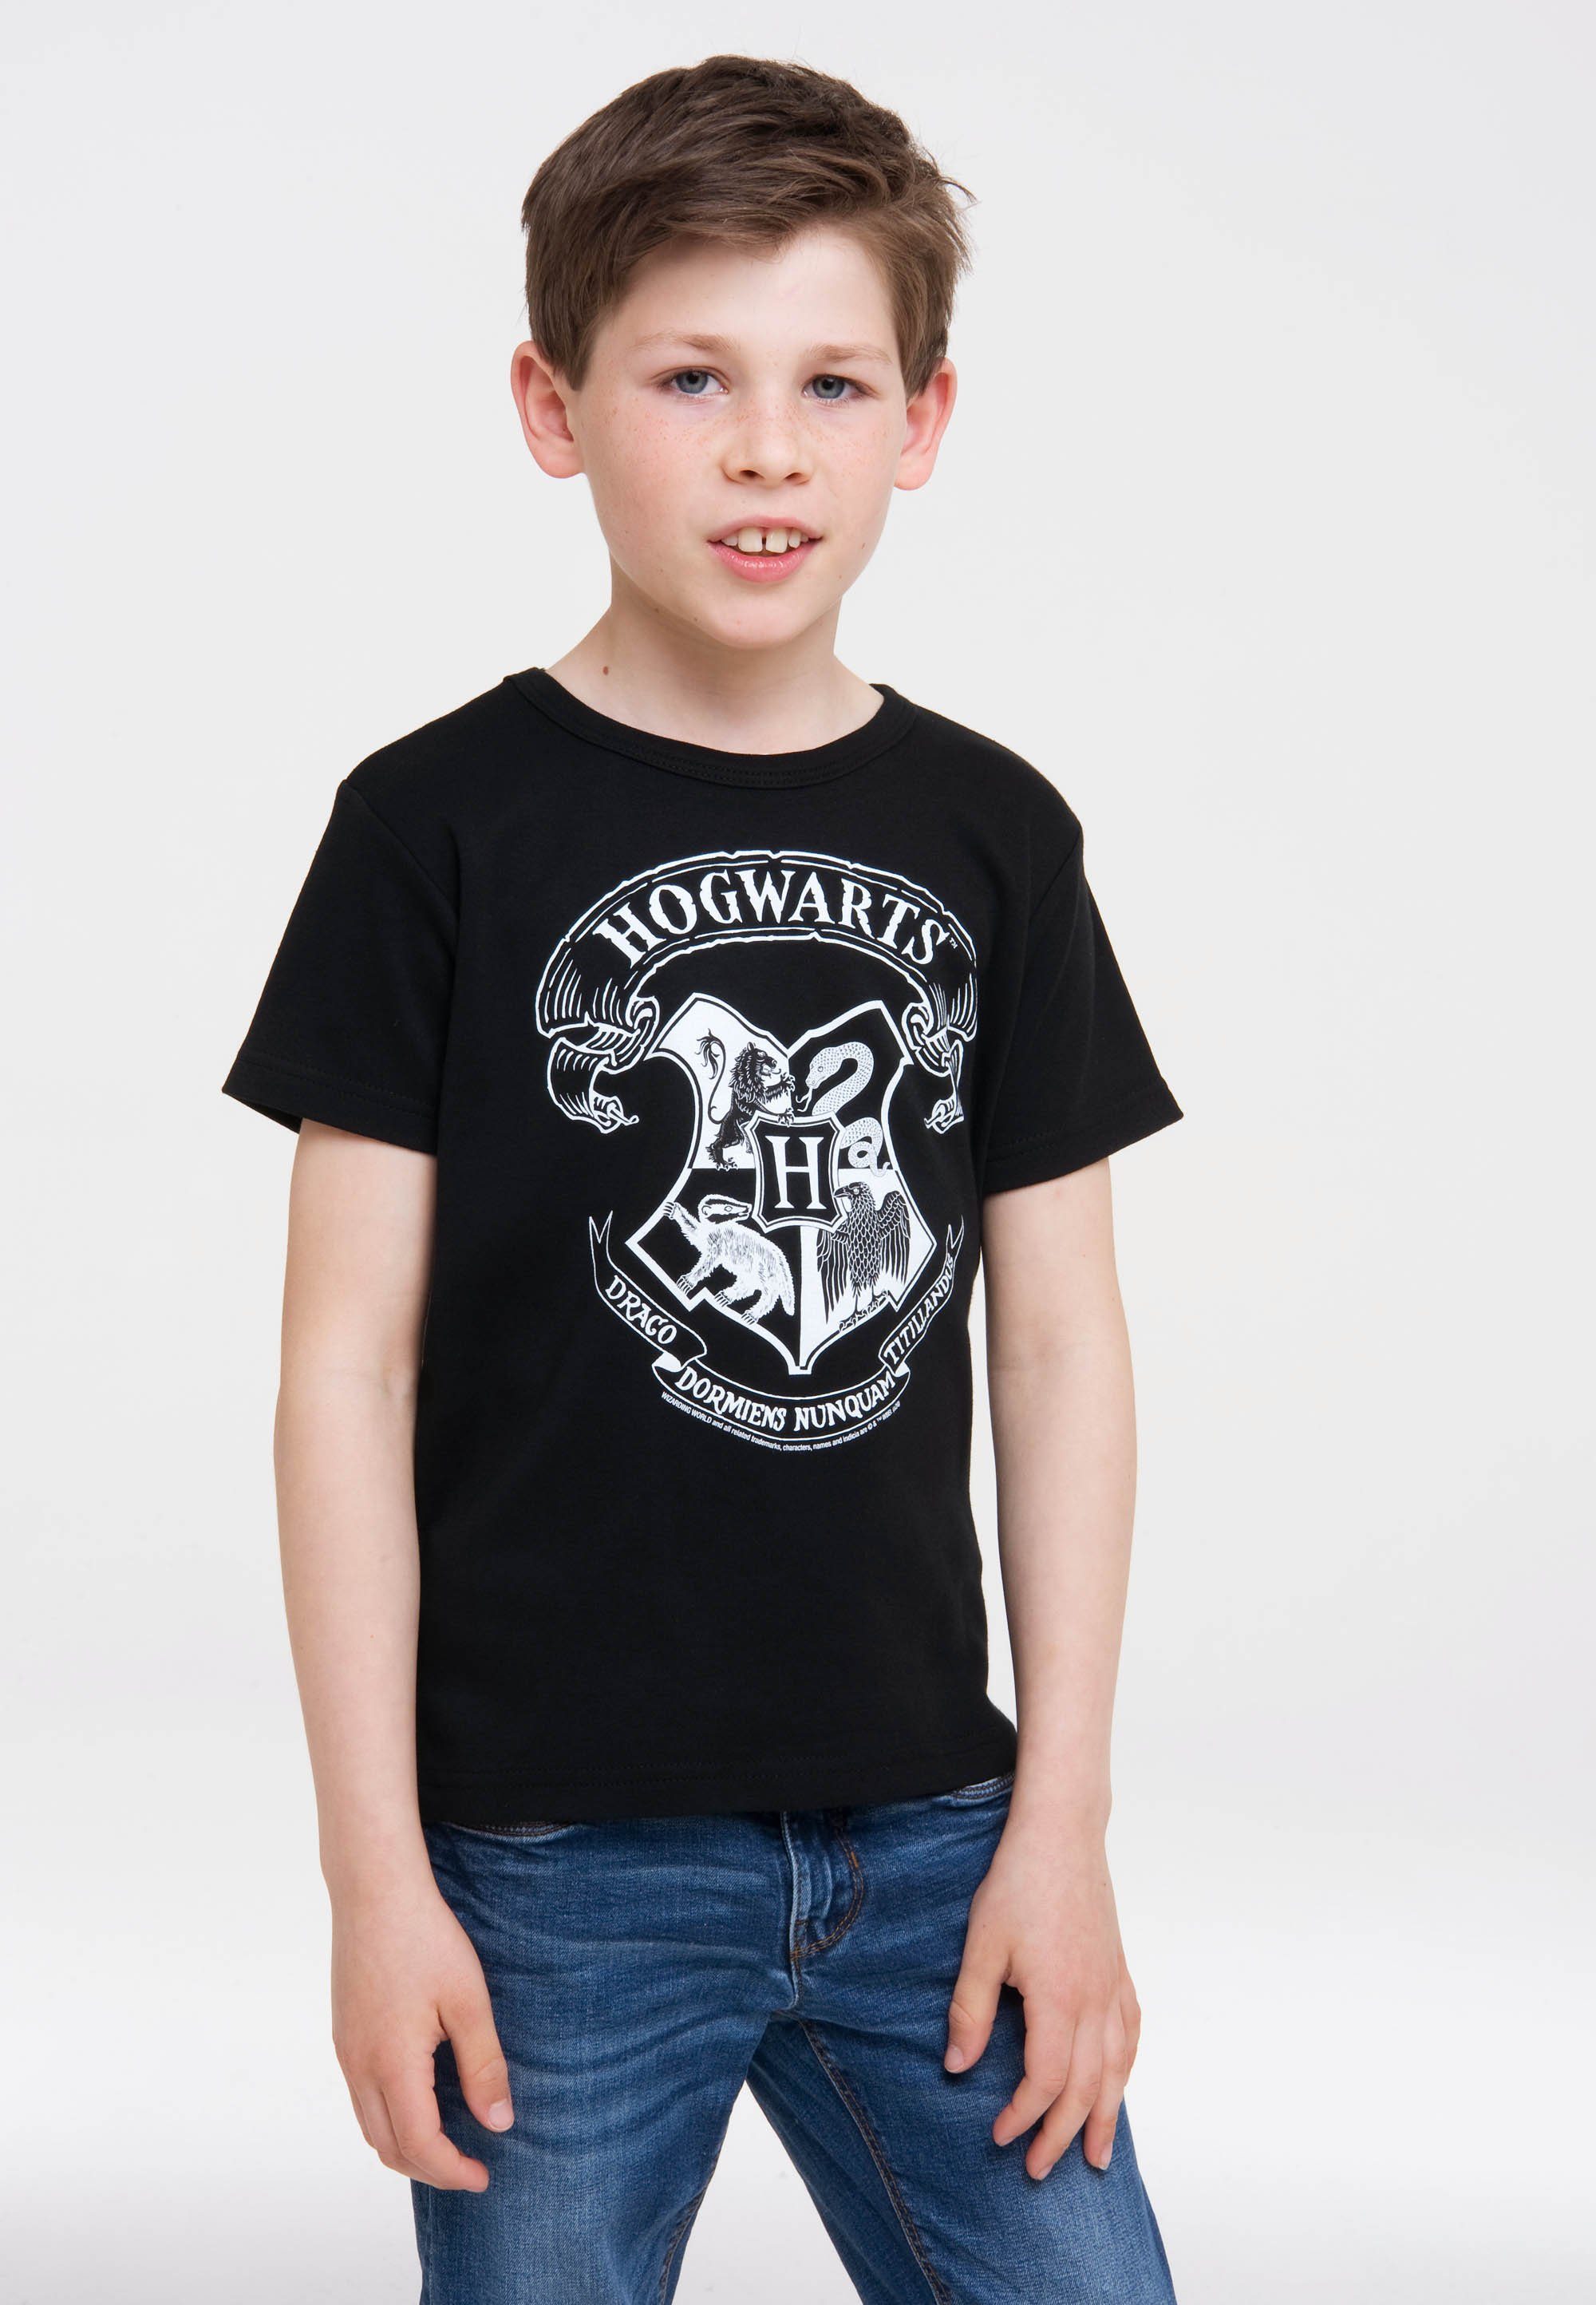 LOGOSHIRT T-Shirt Harry Potter - (Weiß) mit Originaldesign Logo Hogwarts lizenziertem